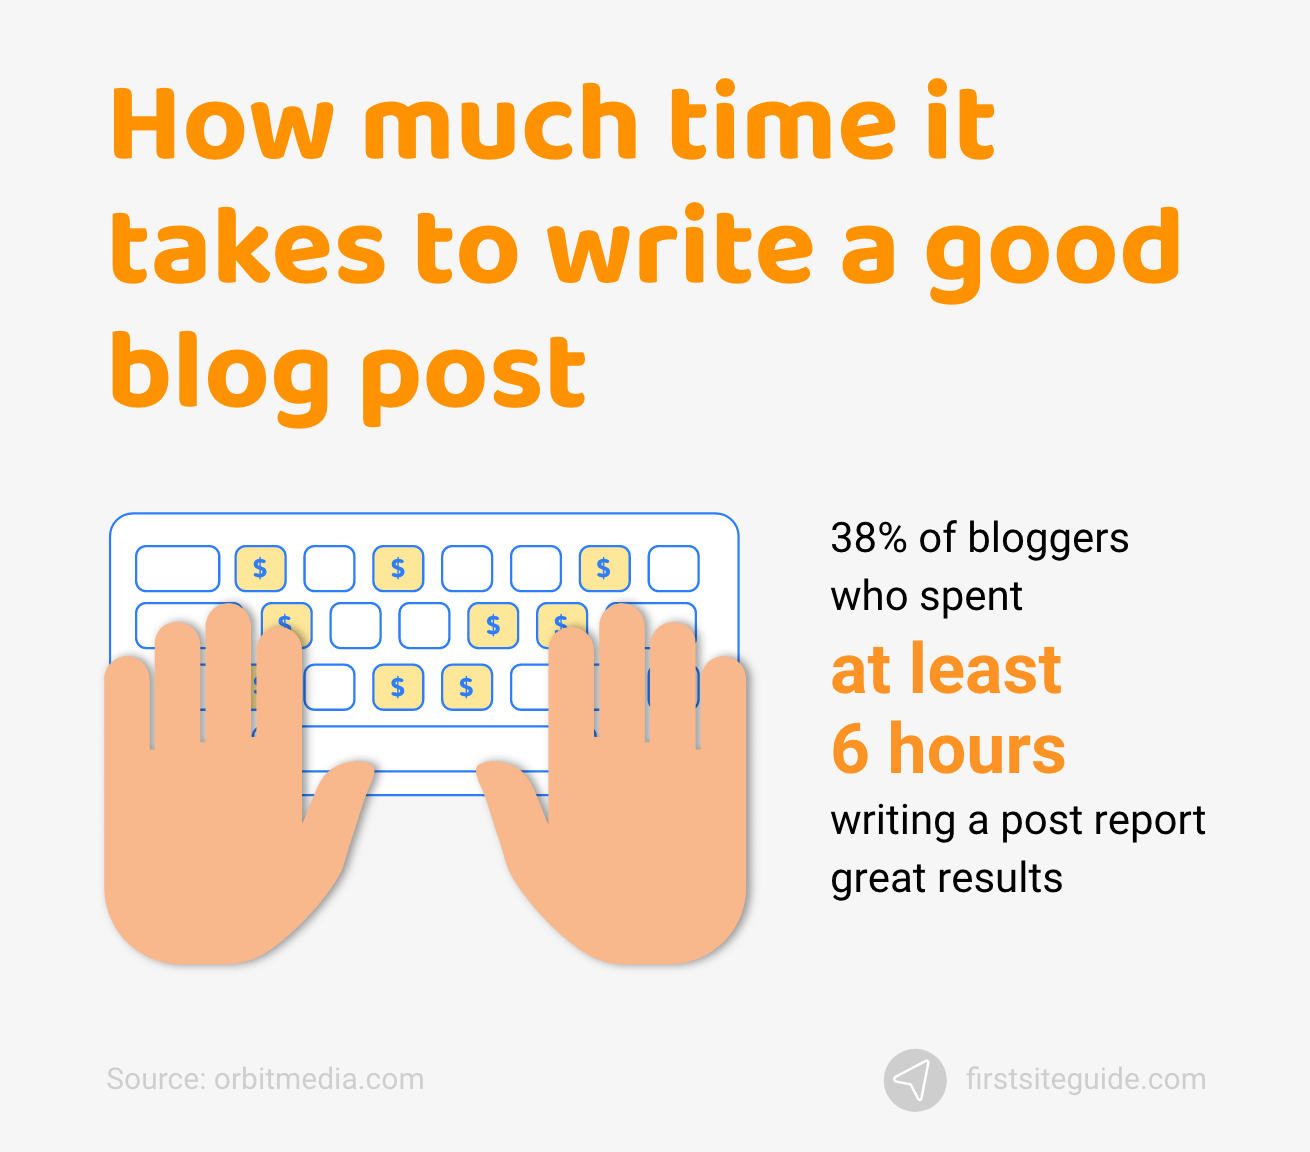 Cât timp trebuie să scrii o postare bună pe blog